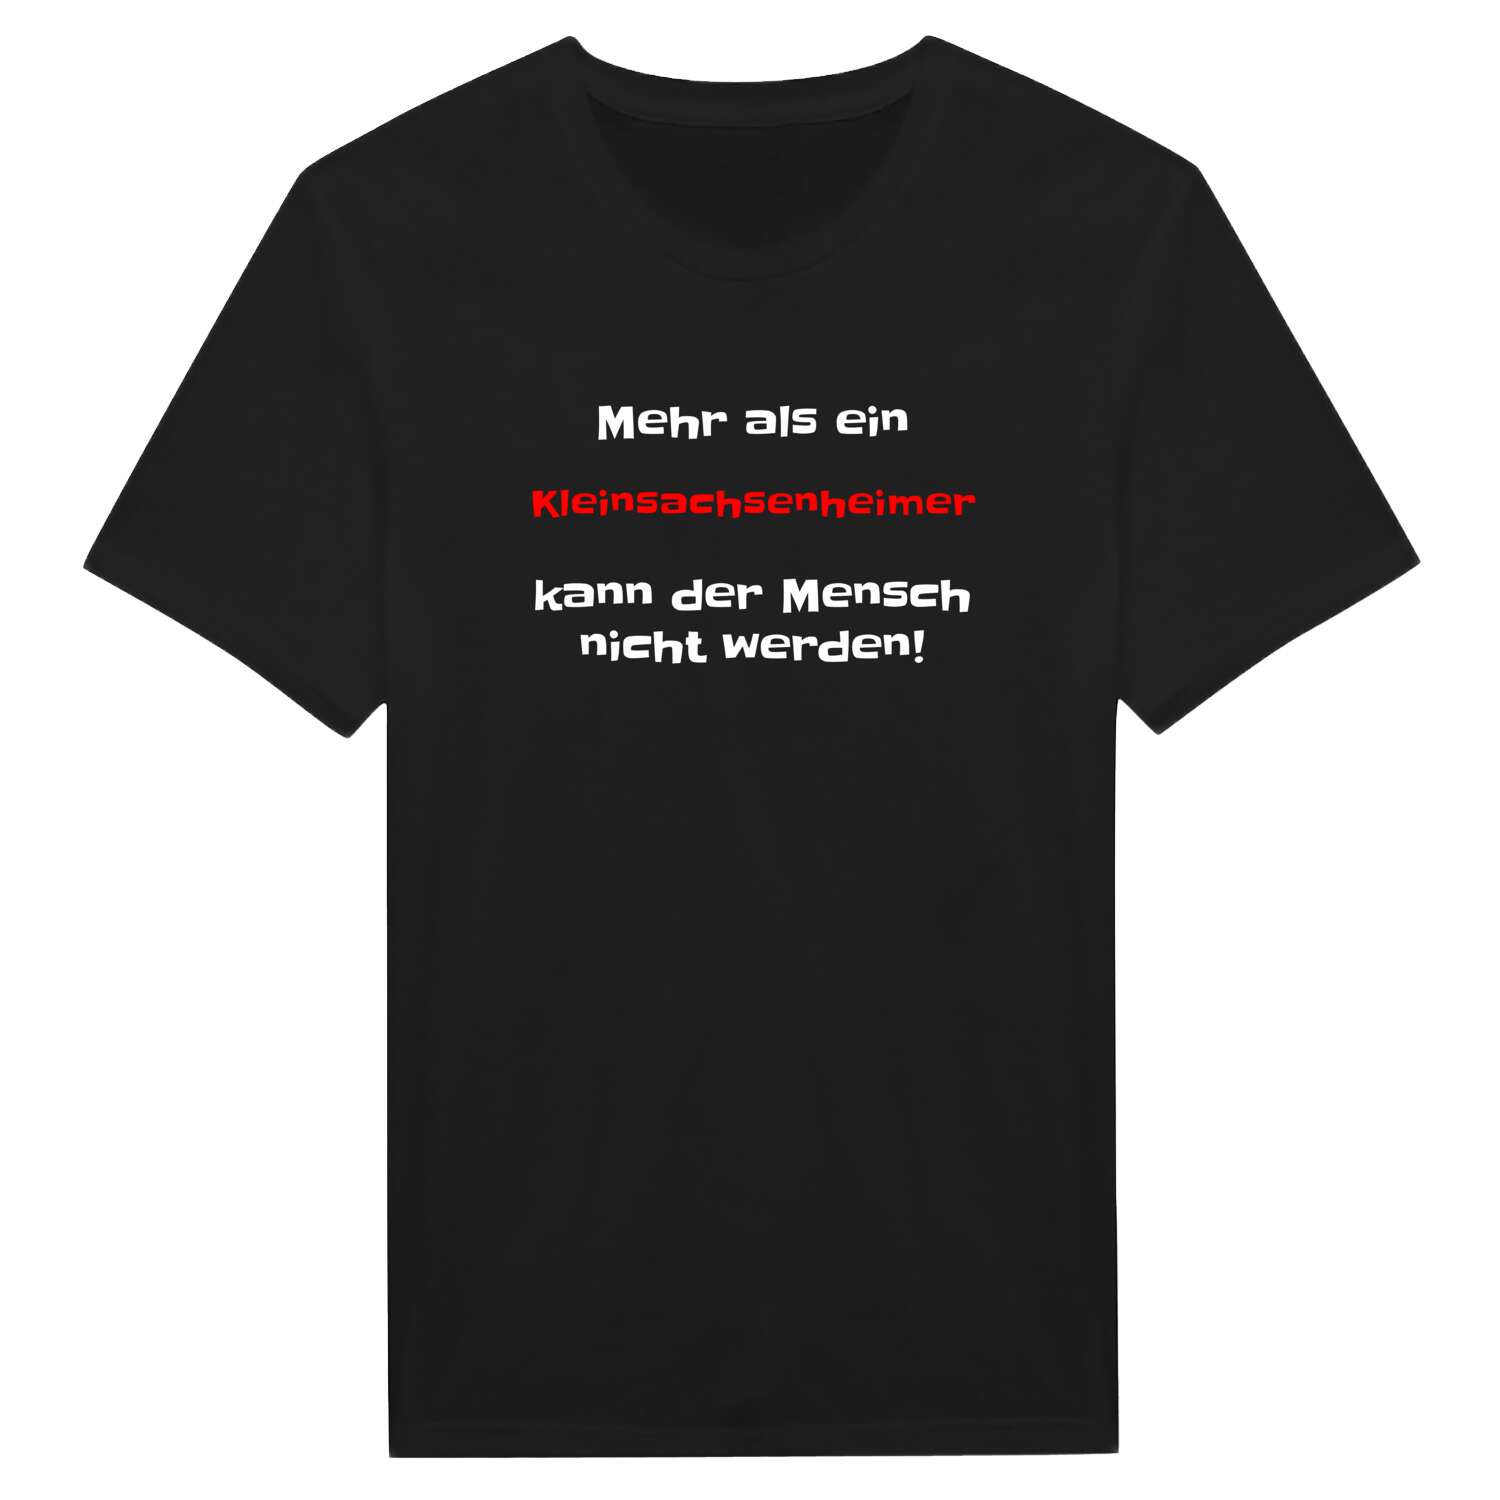 Kleinsachsenheim T-Shirt »Mehr als ein«